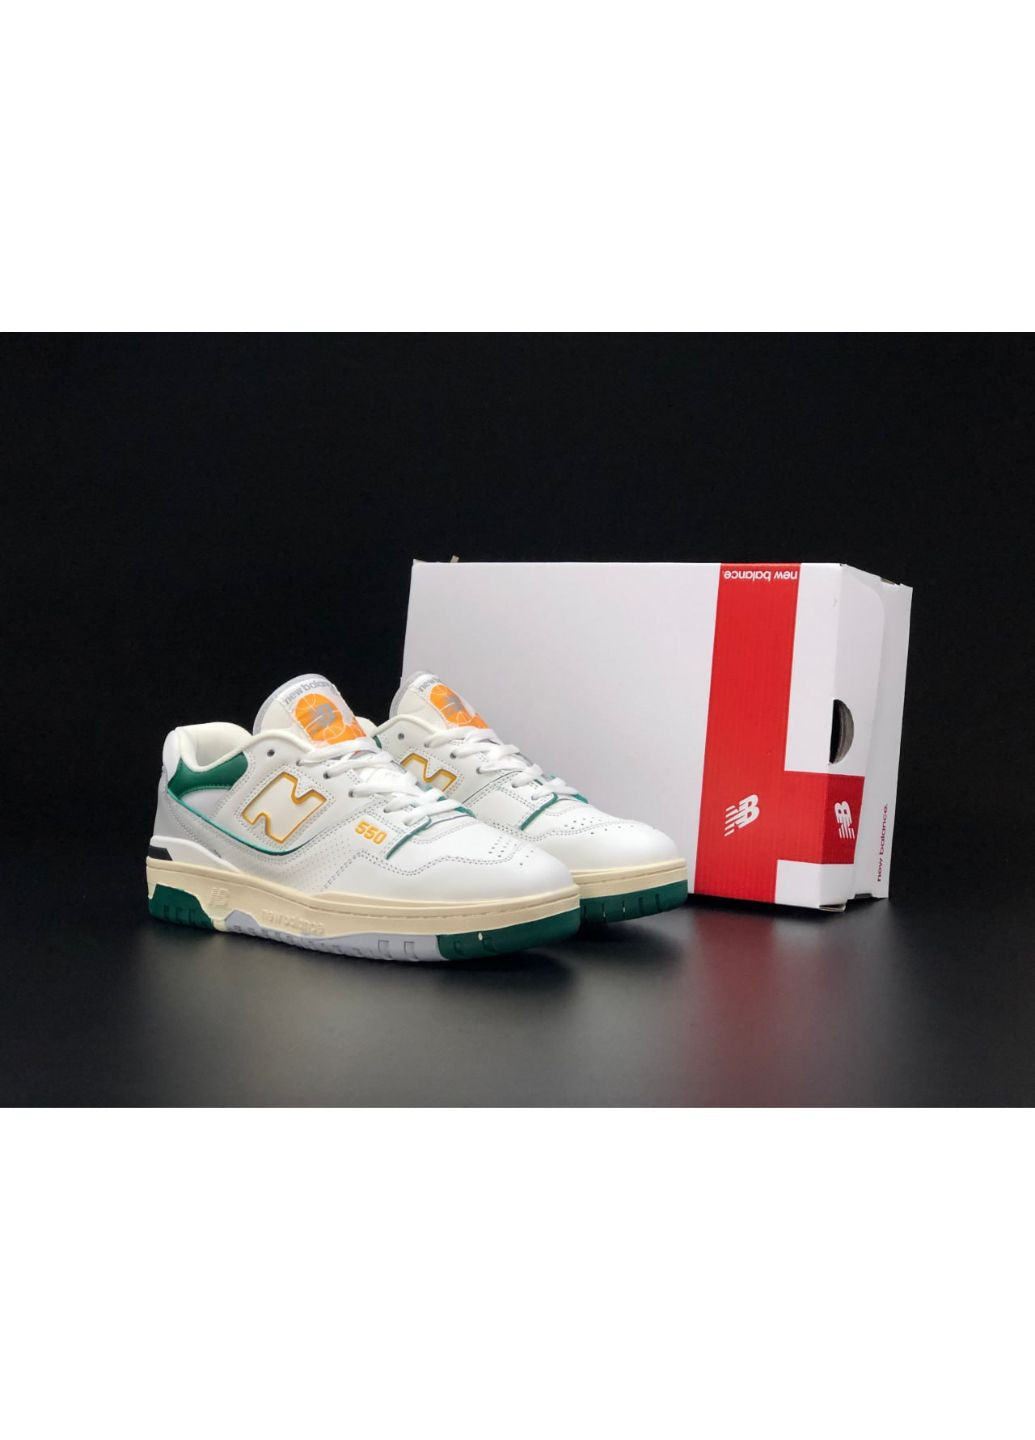 Білі Осінні чоловічі кросівки білі з жовтим\зелені «no name» New Balance 550